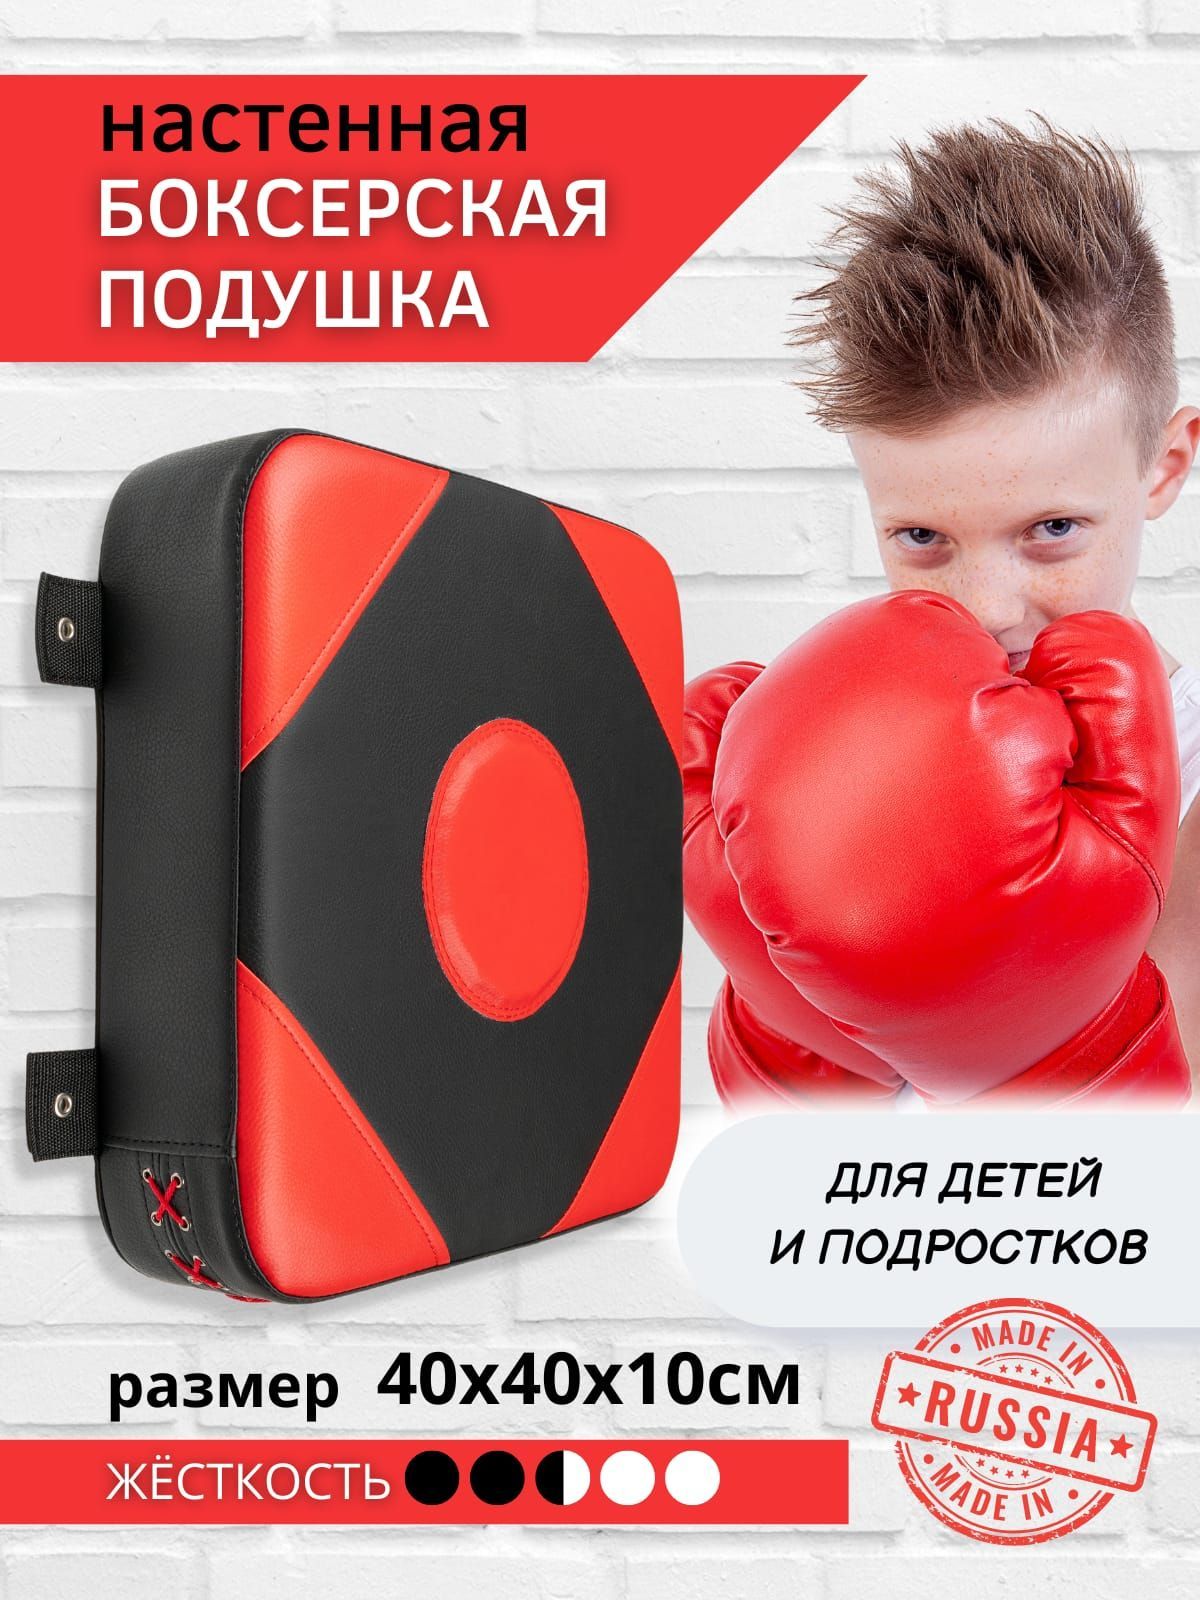 Подушки боксерские настенные : купить в Москве, цены в интернет-магазине РЭЙ-СПОРТ